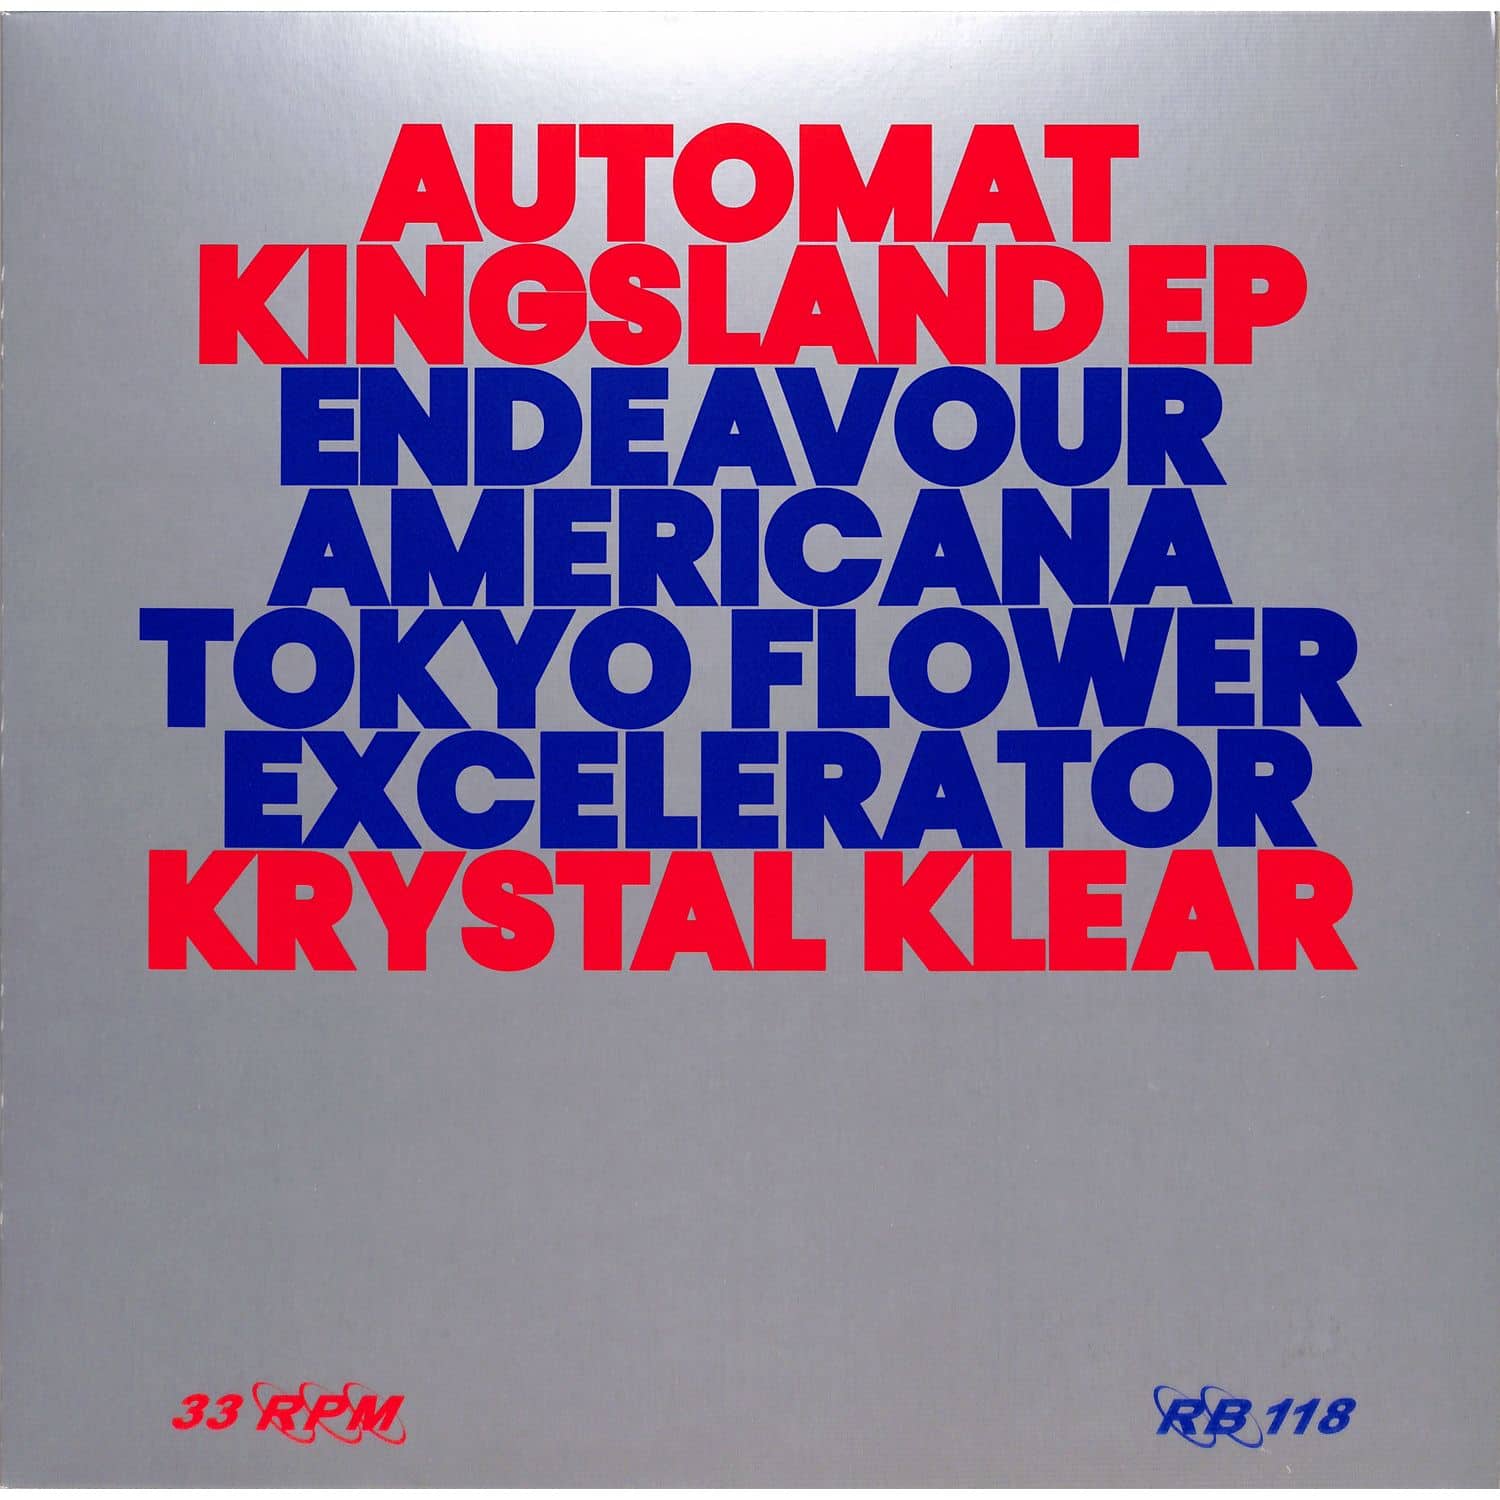 Krystal Klear - AUTOMAT KINGSLAND